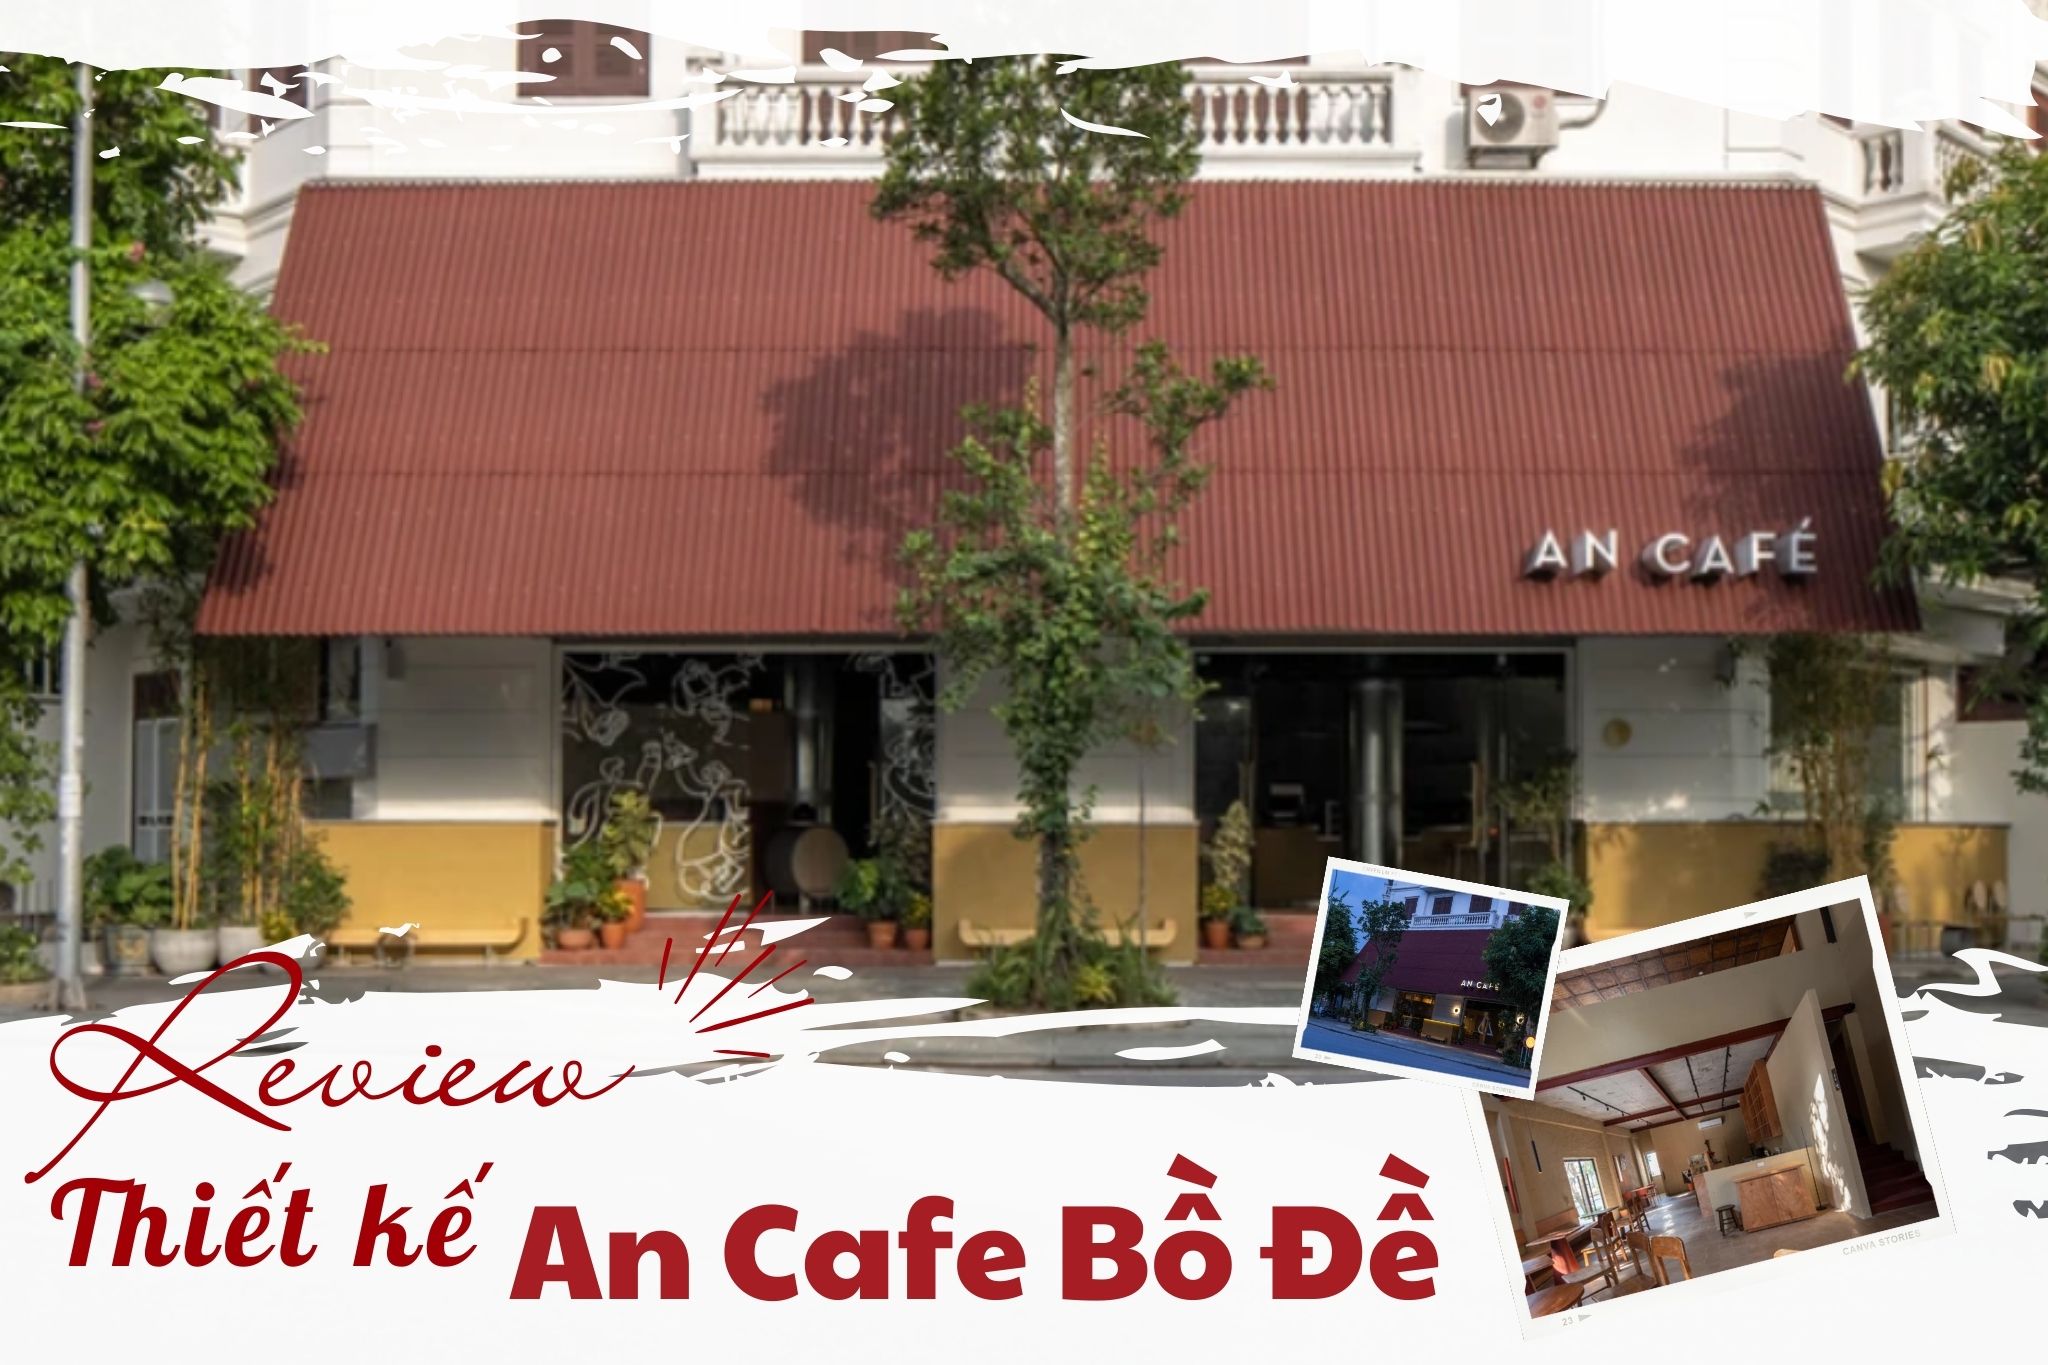 Review Thiết kế An Cafe Bồ Đề - Cảm hứng từ ngôi nhà truyền thống Bắc Bộ